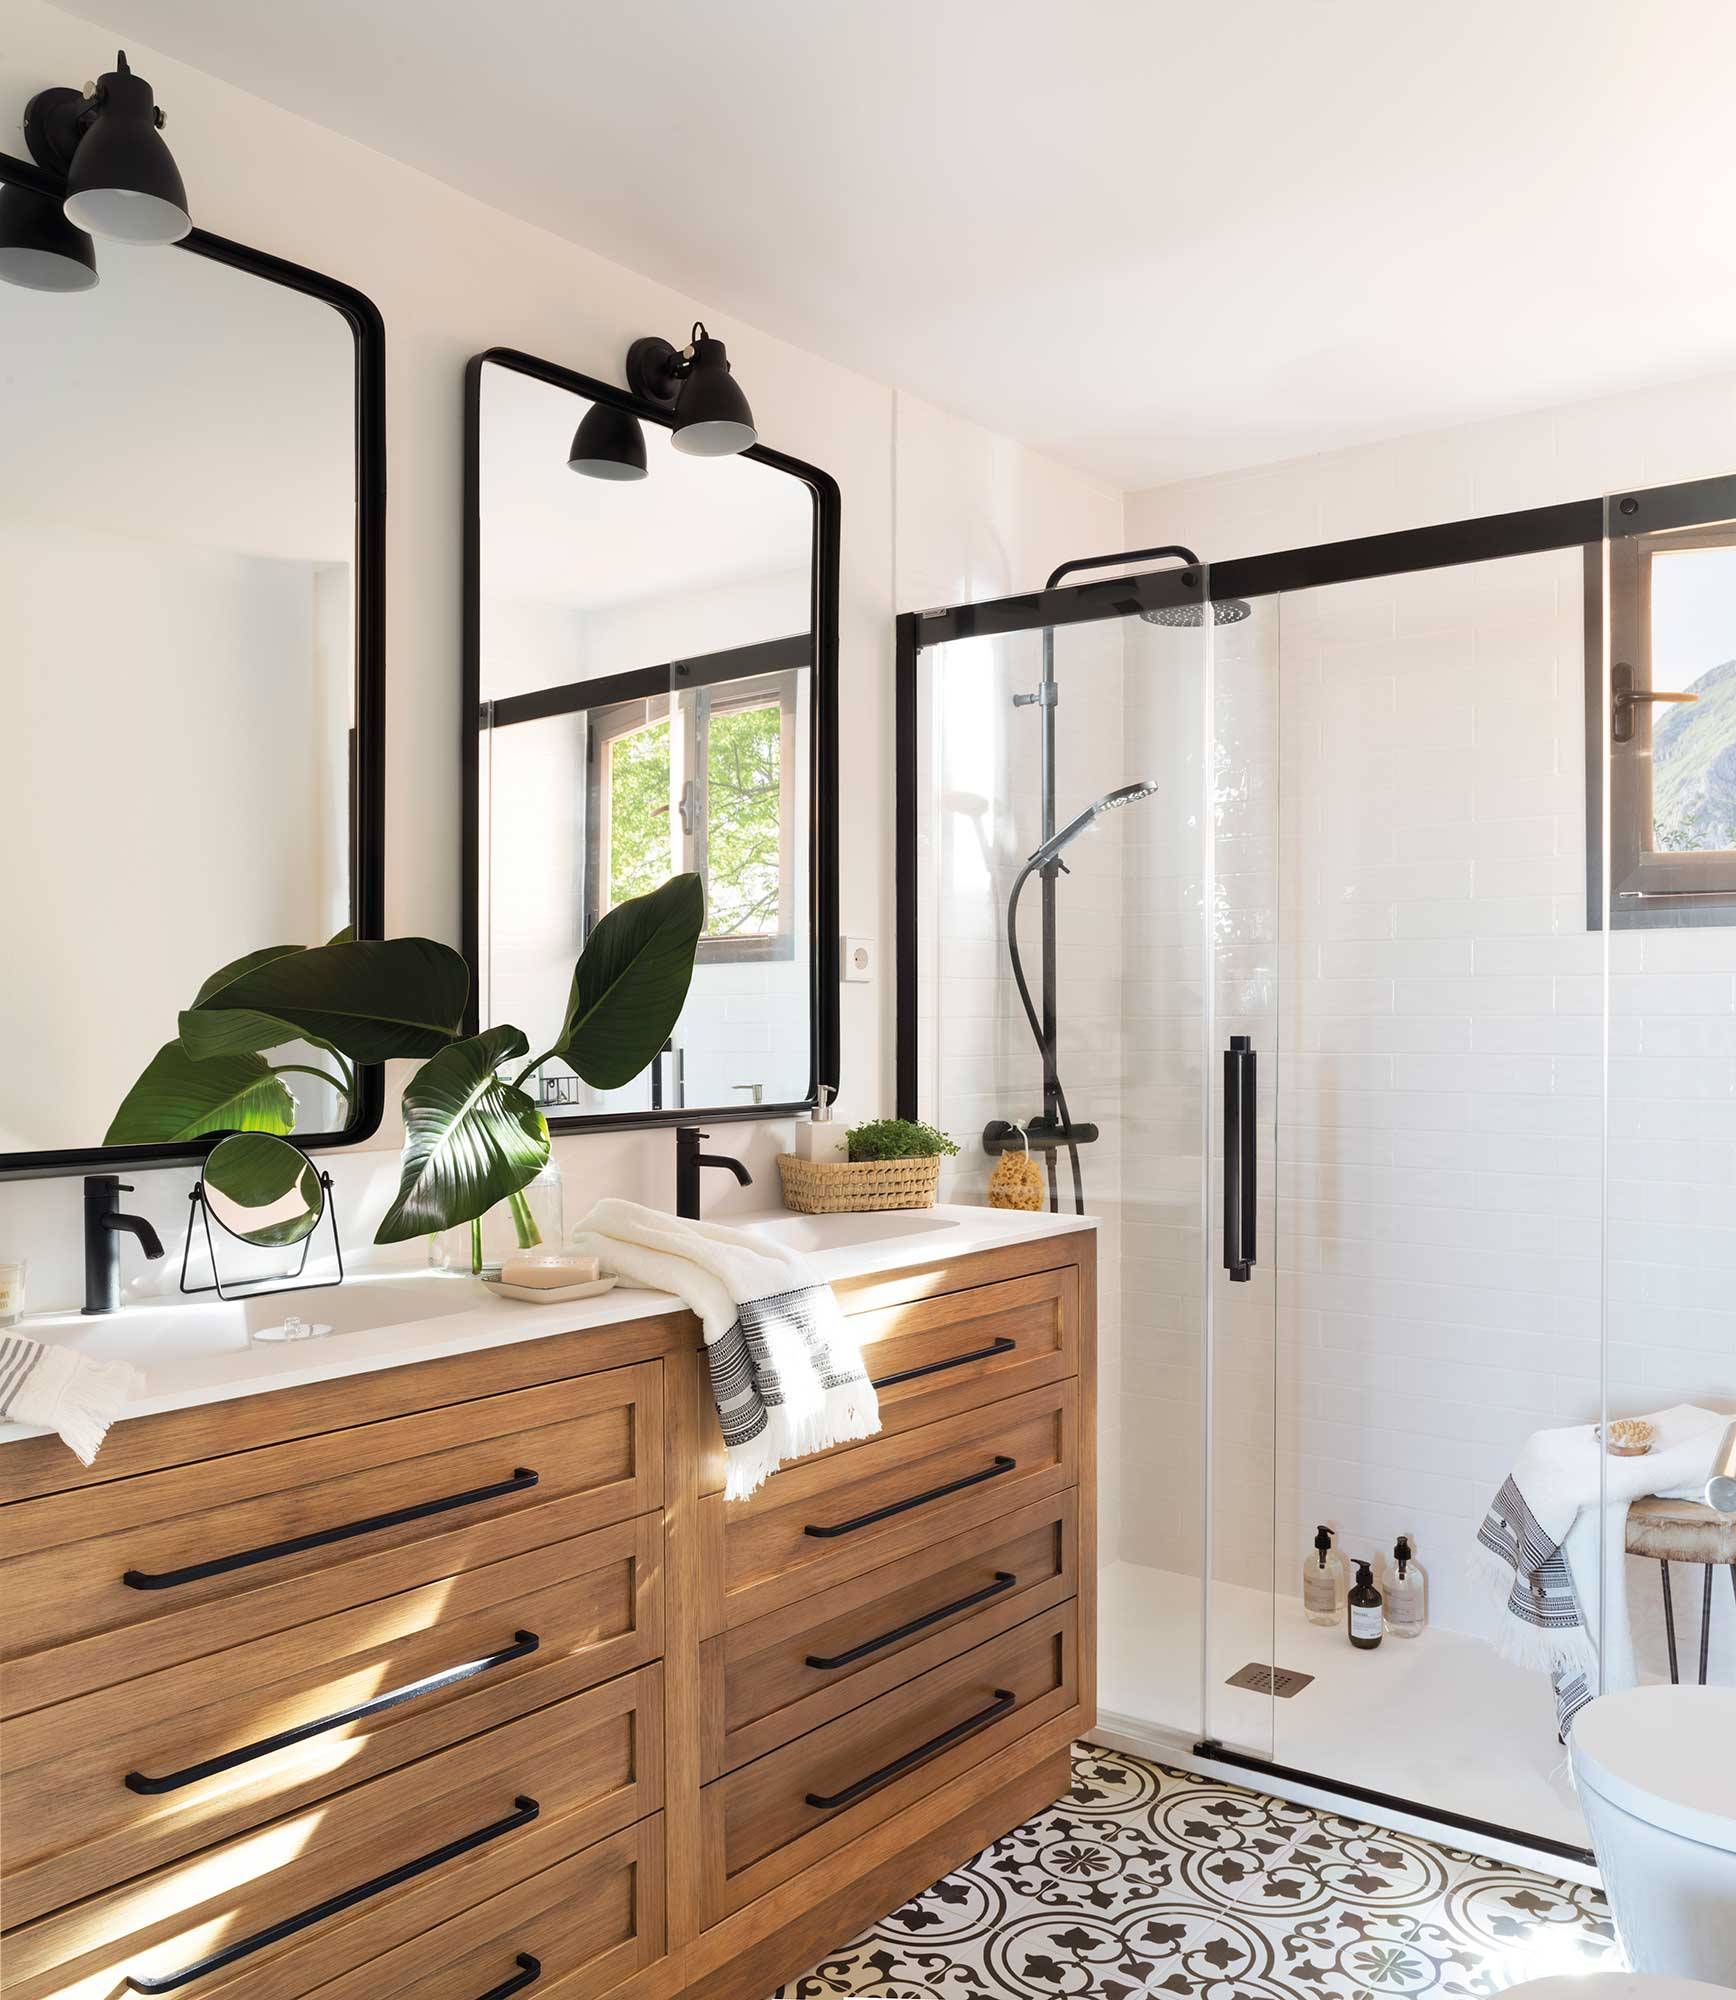 Baño con mueble de madera y mampara negra de ducha XL.